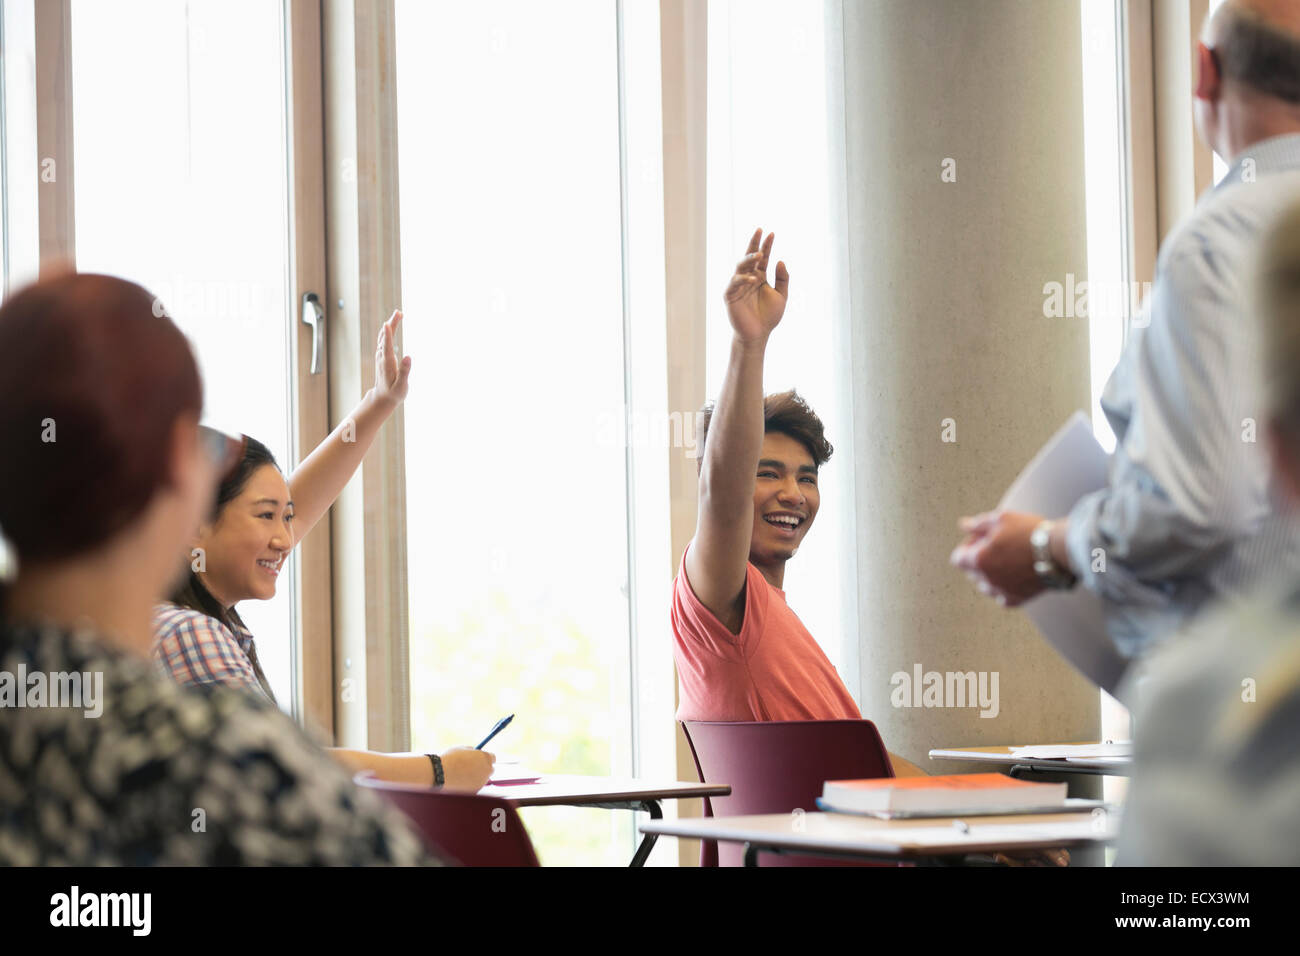 Smiling university students raising hands at seminar Stock Photo